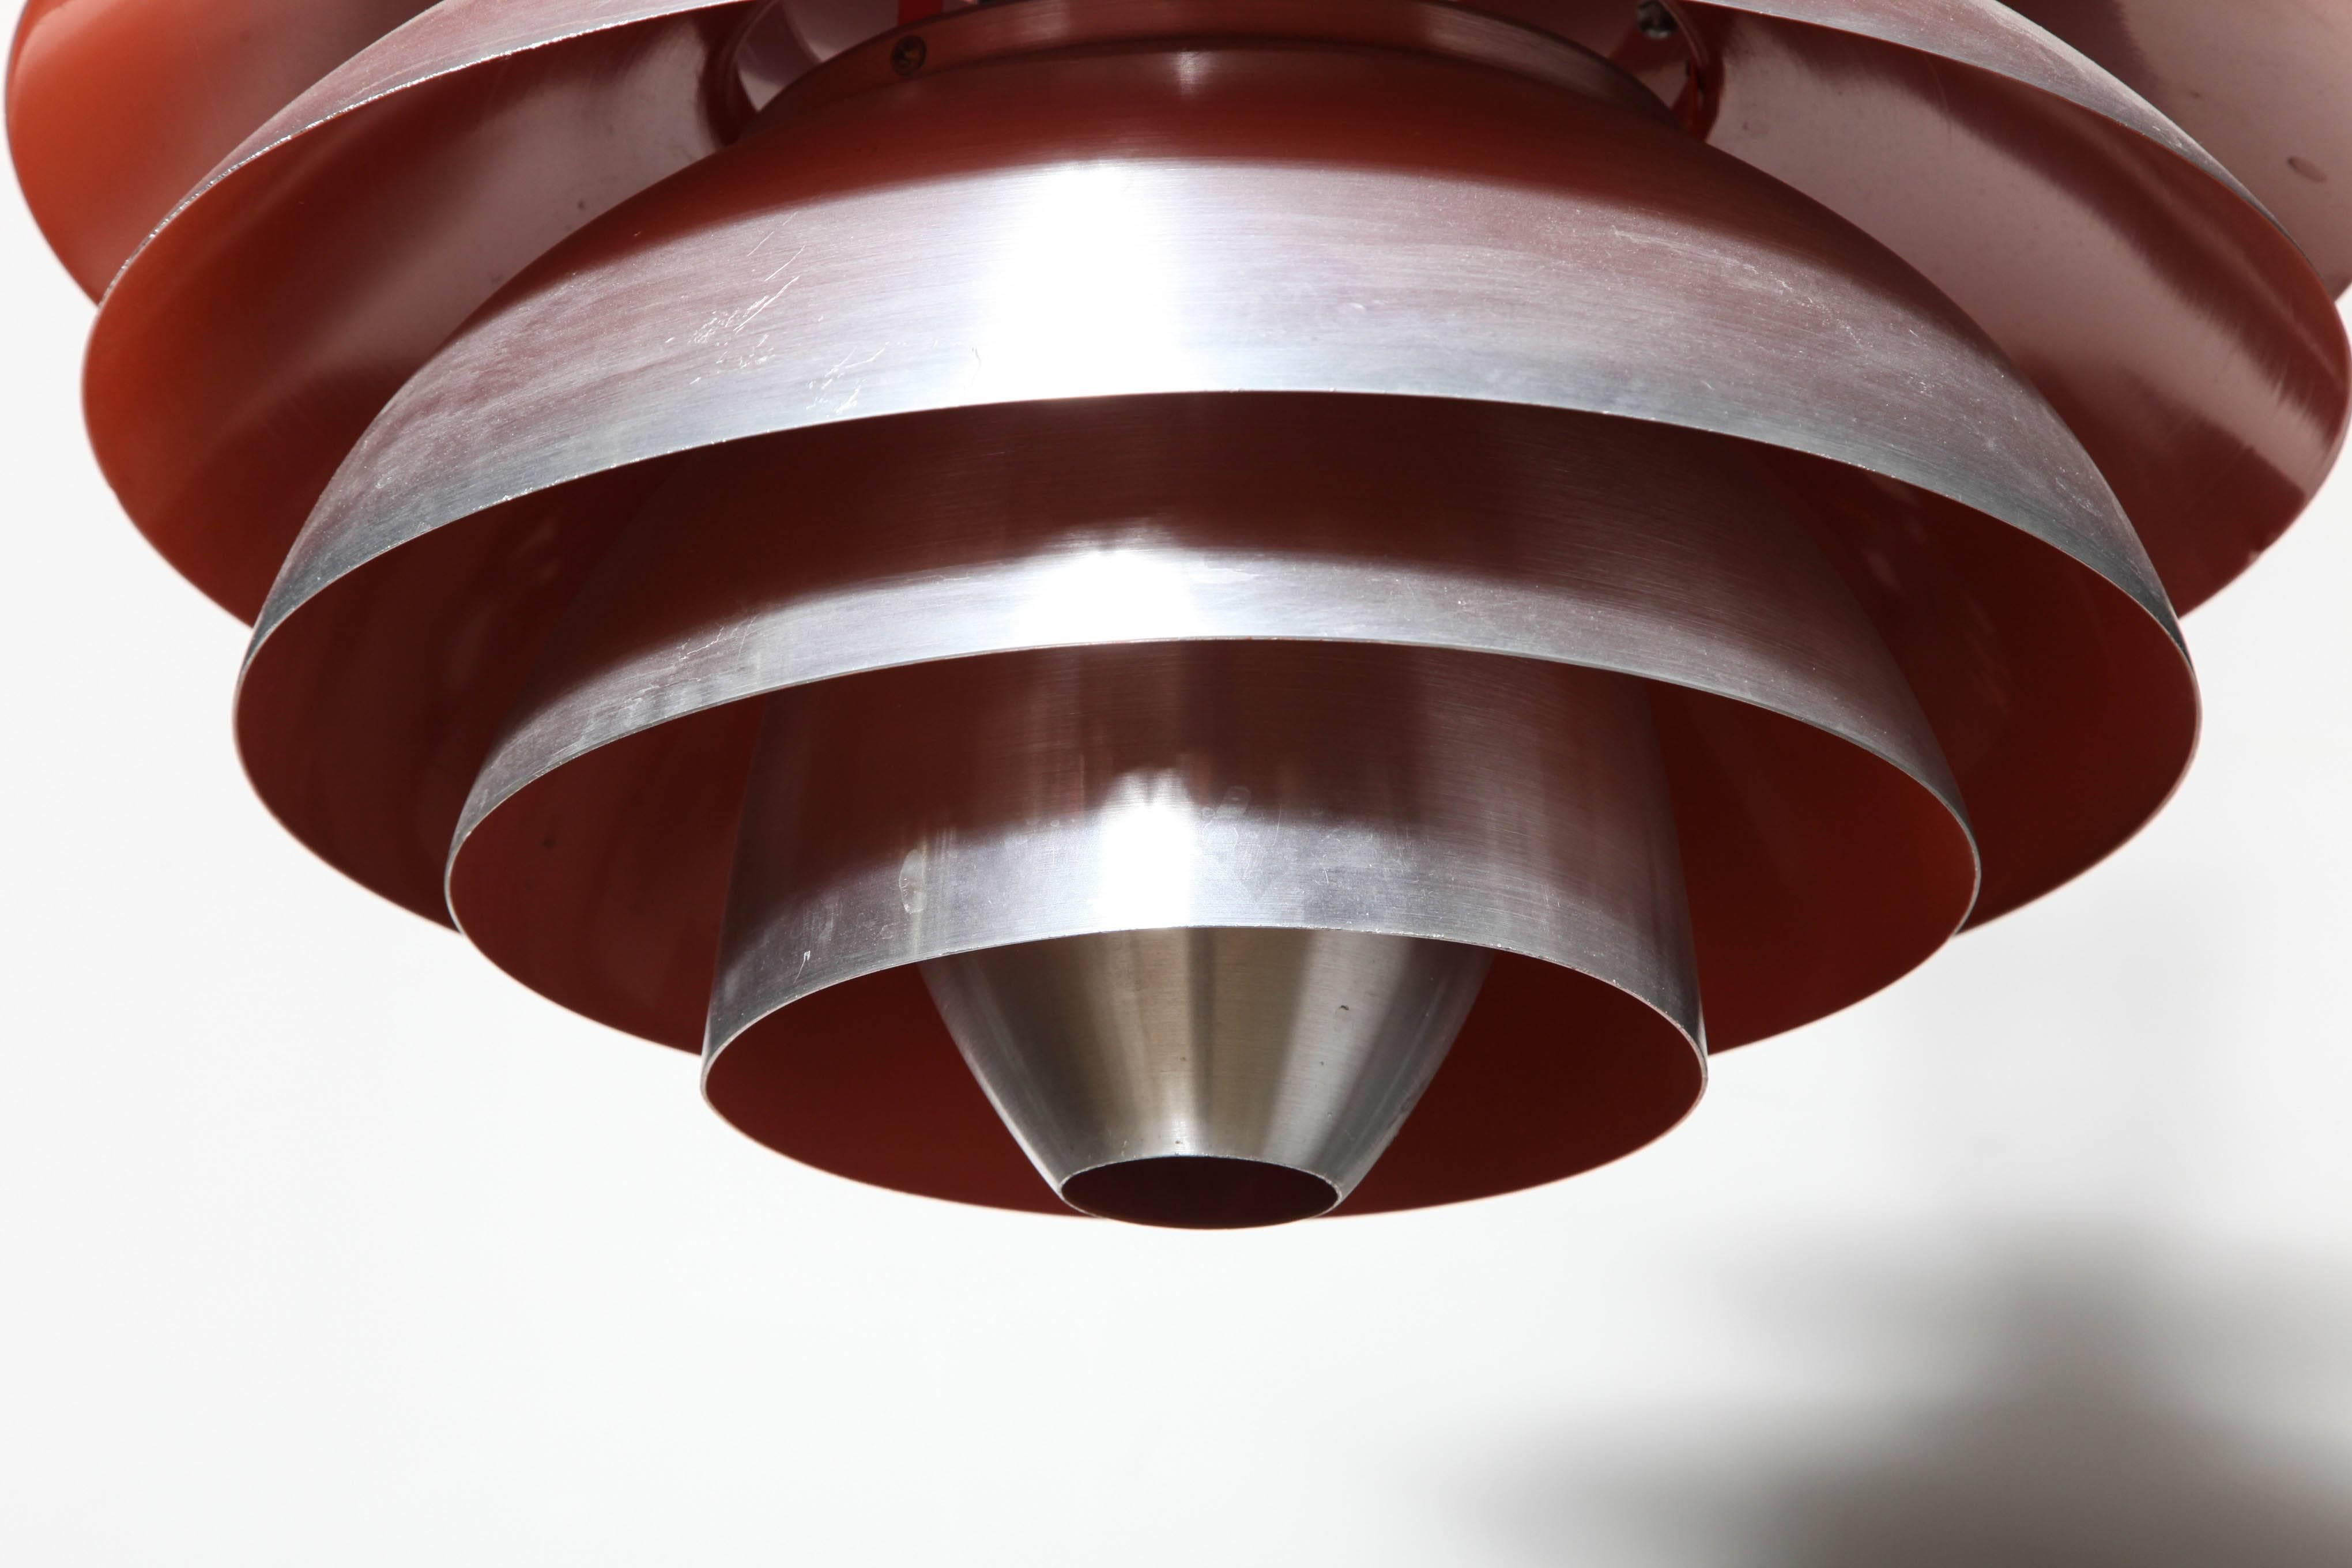 Lampe suspendue moderne danoise Poul Henningsen pour Louis Poulsen PH Louvre en aluminium brossé. Forme ovale avec neuf bandes concentriques réfléchissantes en aluminium brossé et intérieur émaillé rouge chaud. Lumière chaude gratuite.  Hauteur